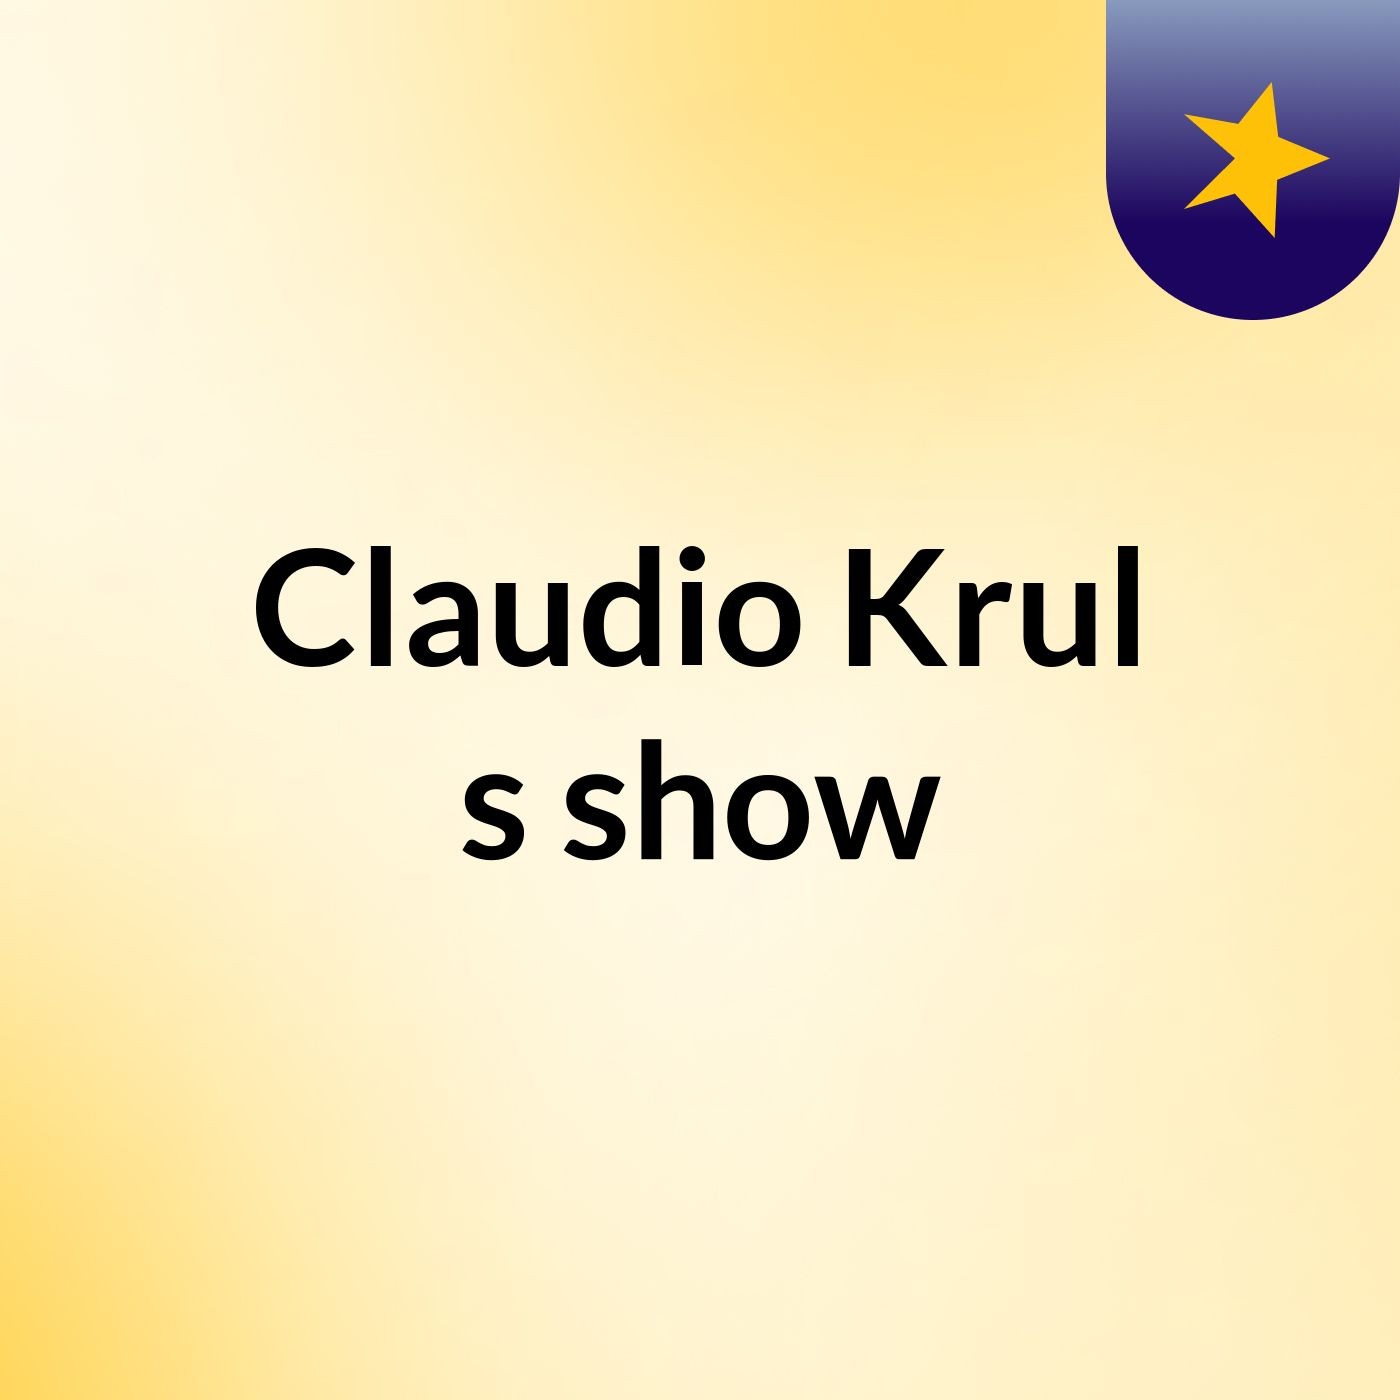 Claudio Krul's show